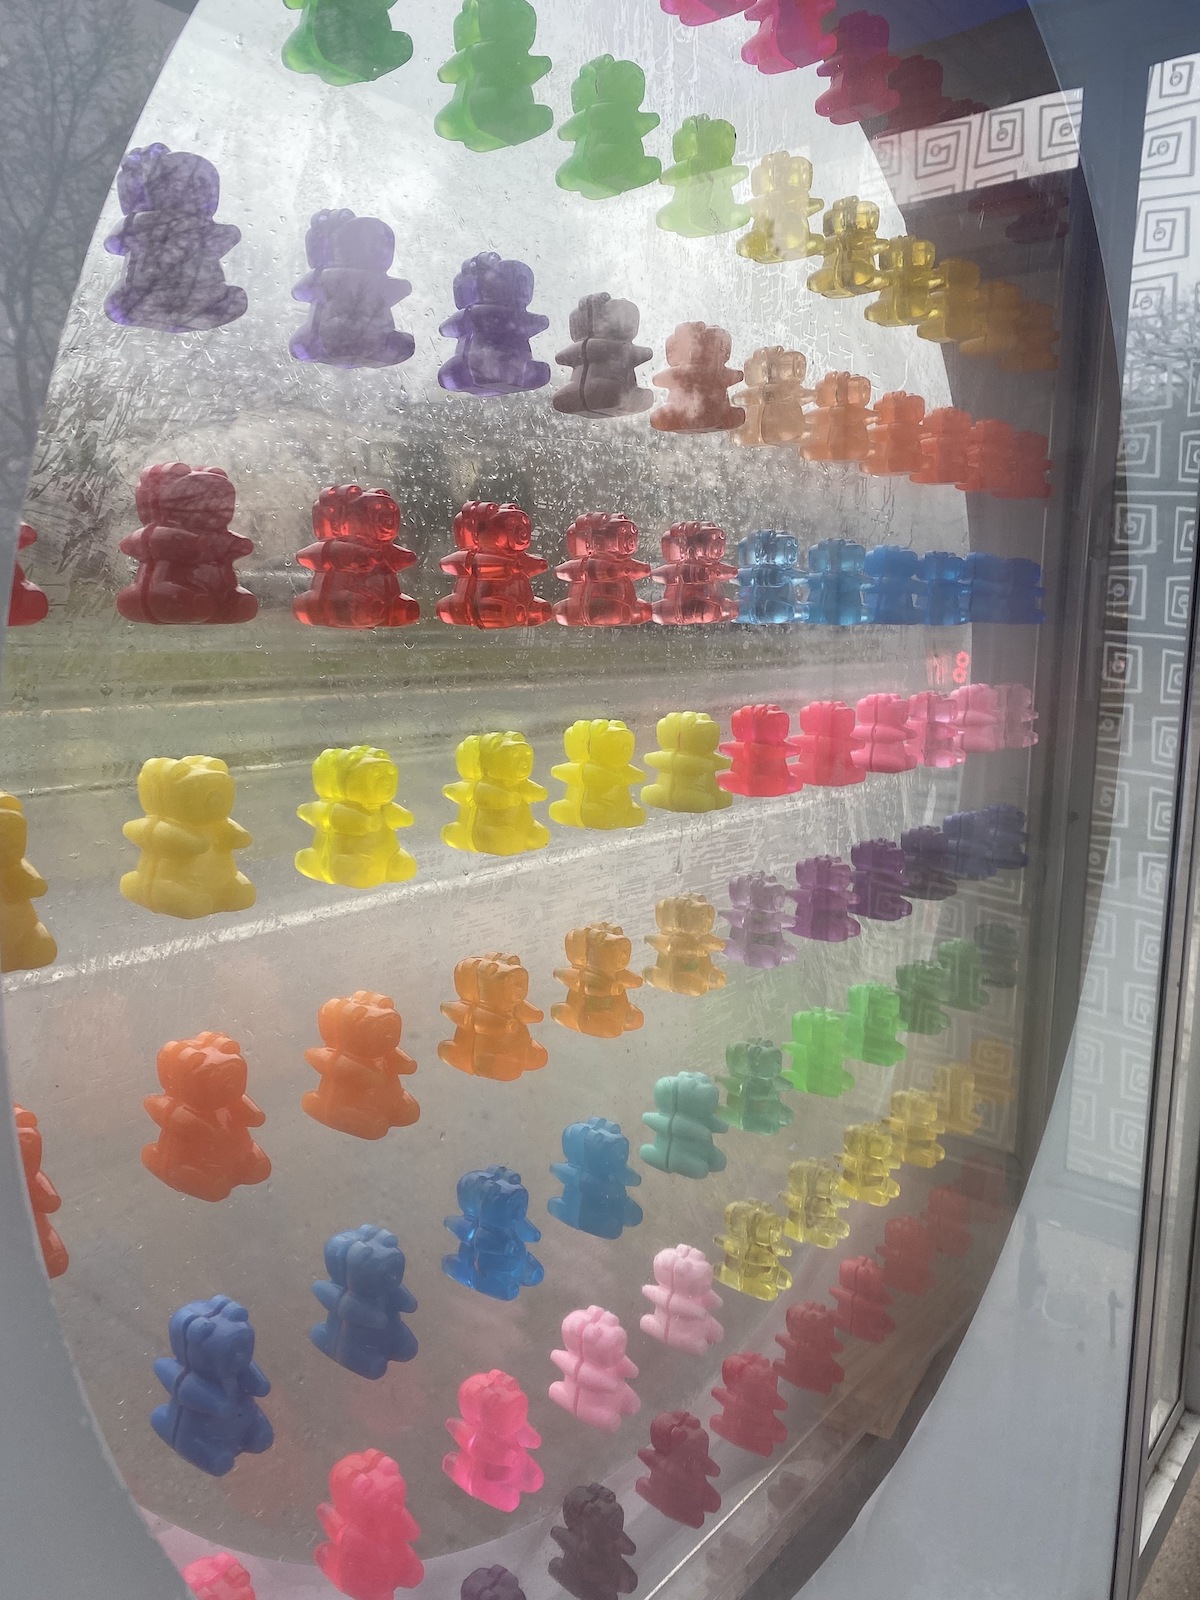 Gummi Bear Joy Art Installation